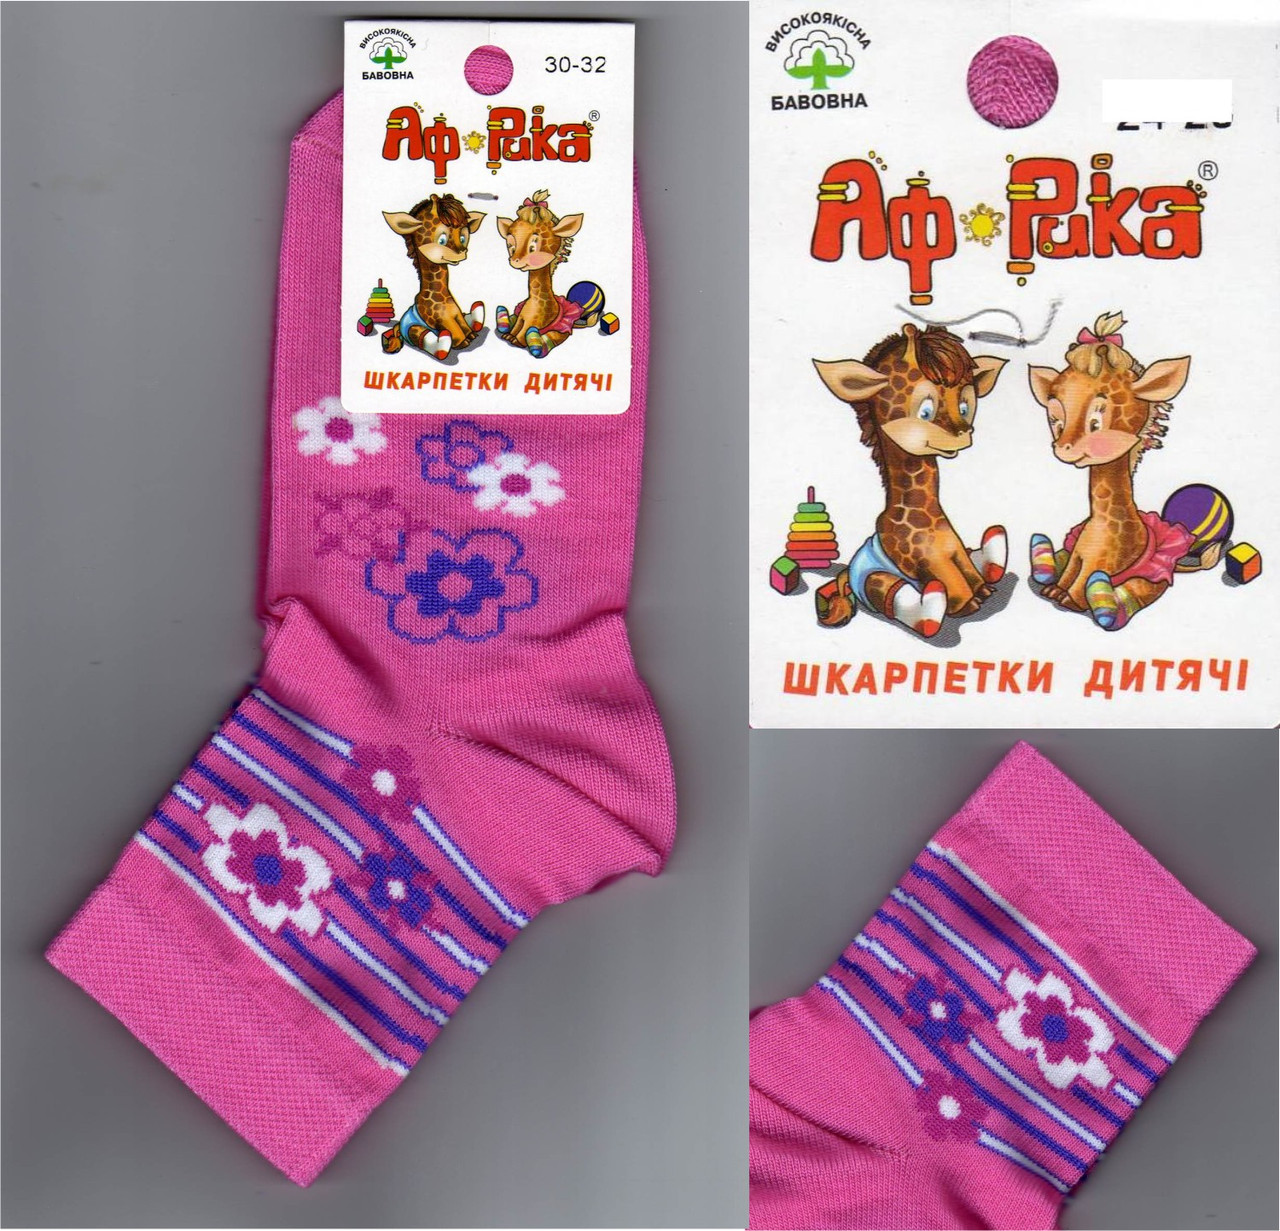 Шкарпетки дитячі демісезонні "Африка" Місюренко 20 р) дівчинка НДД-08136